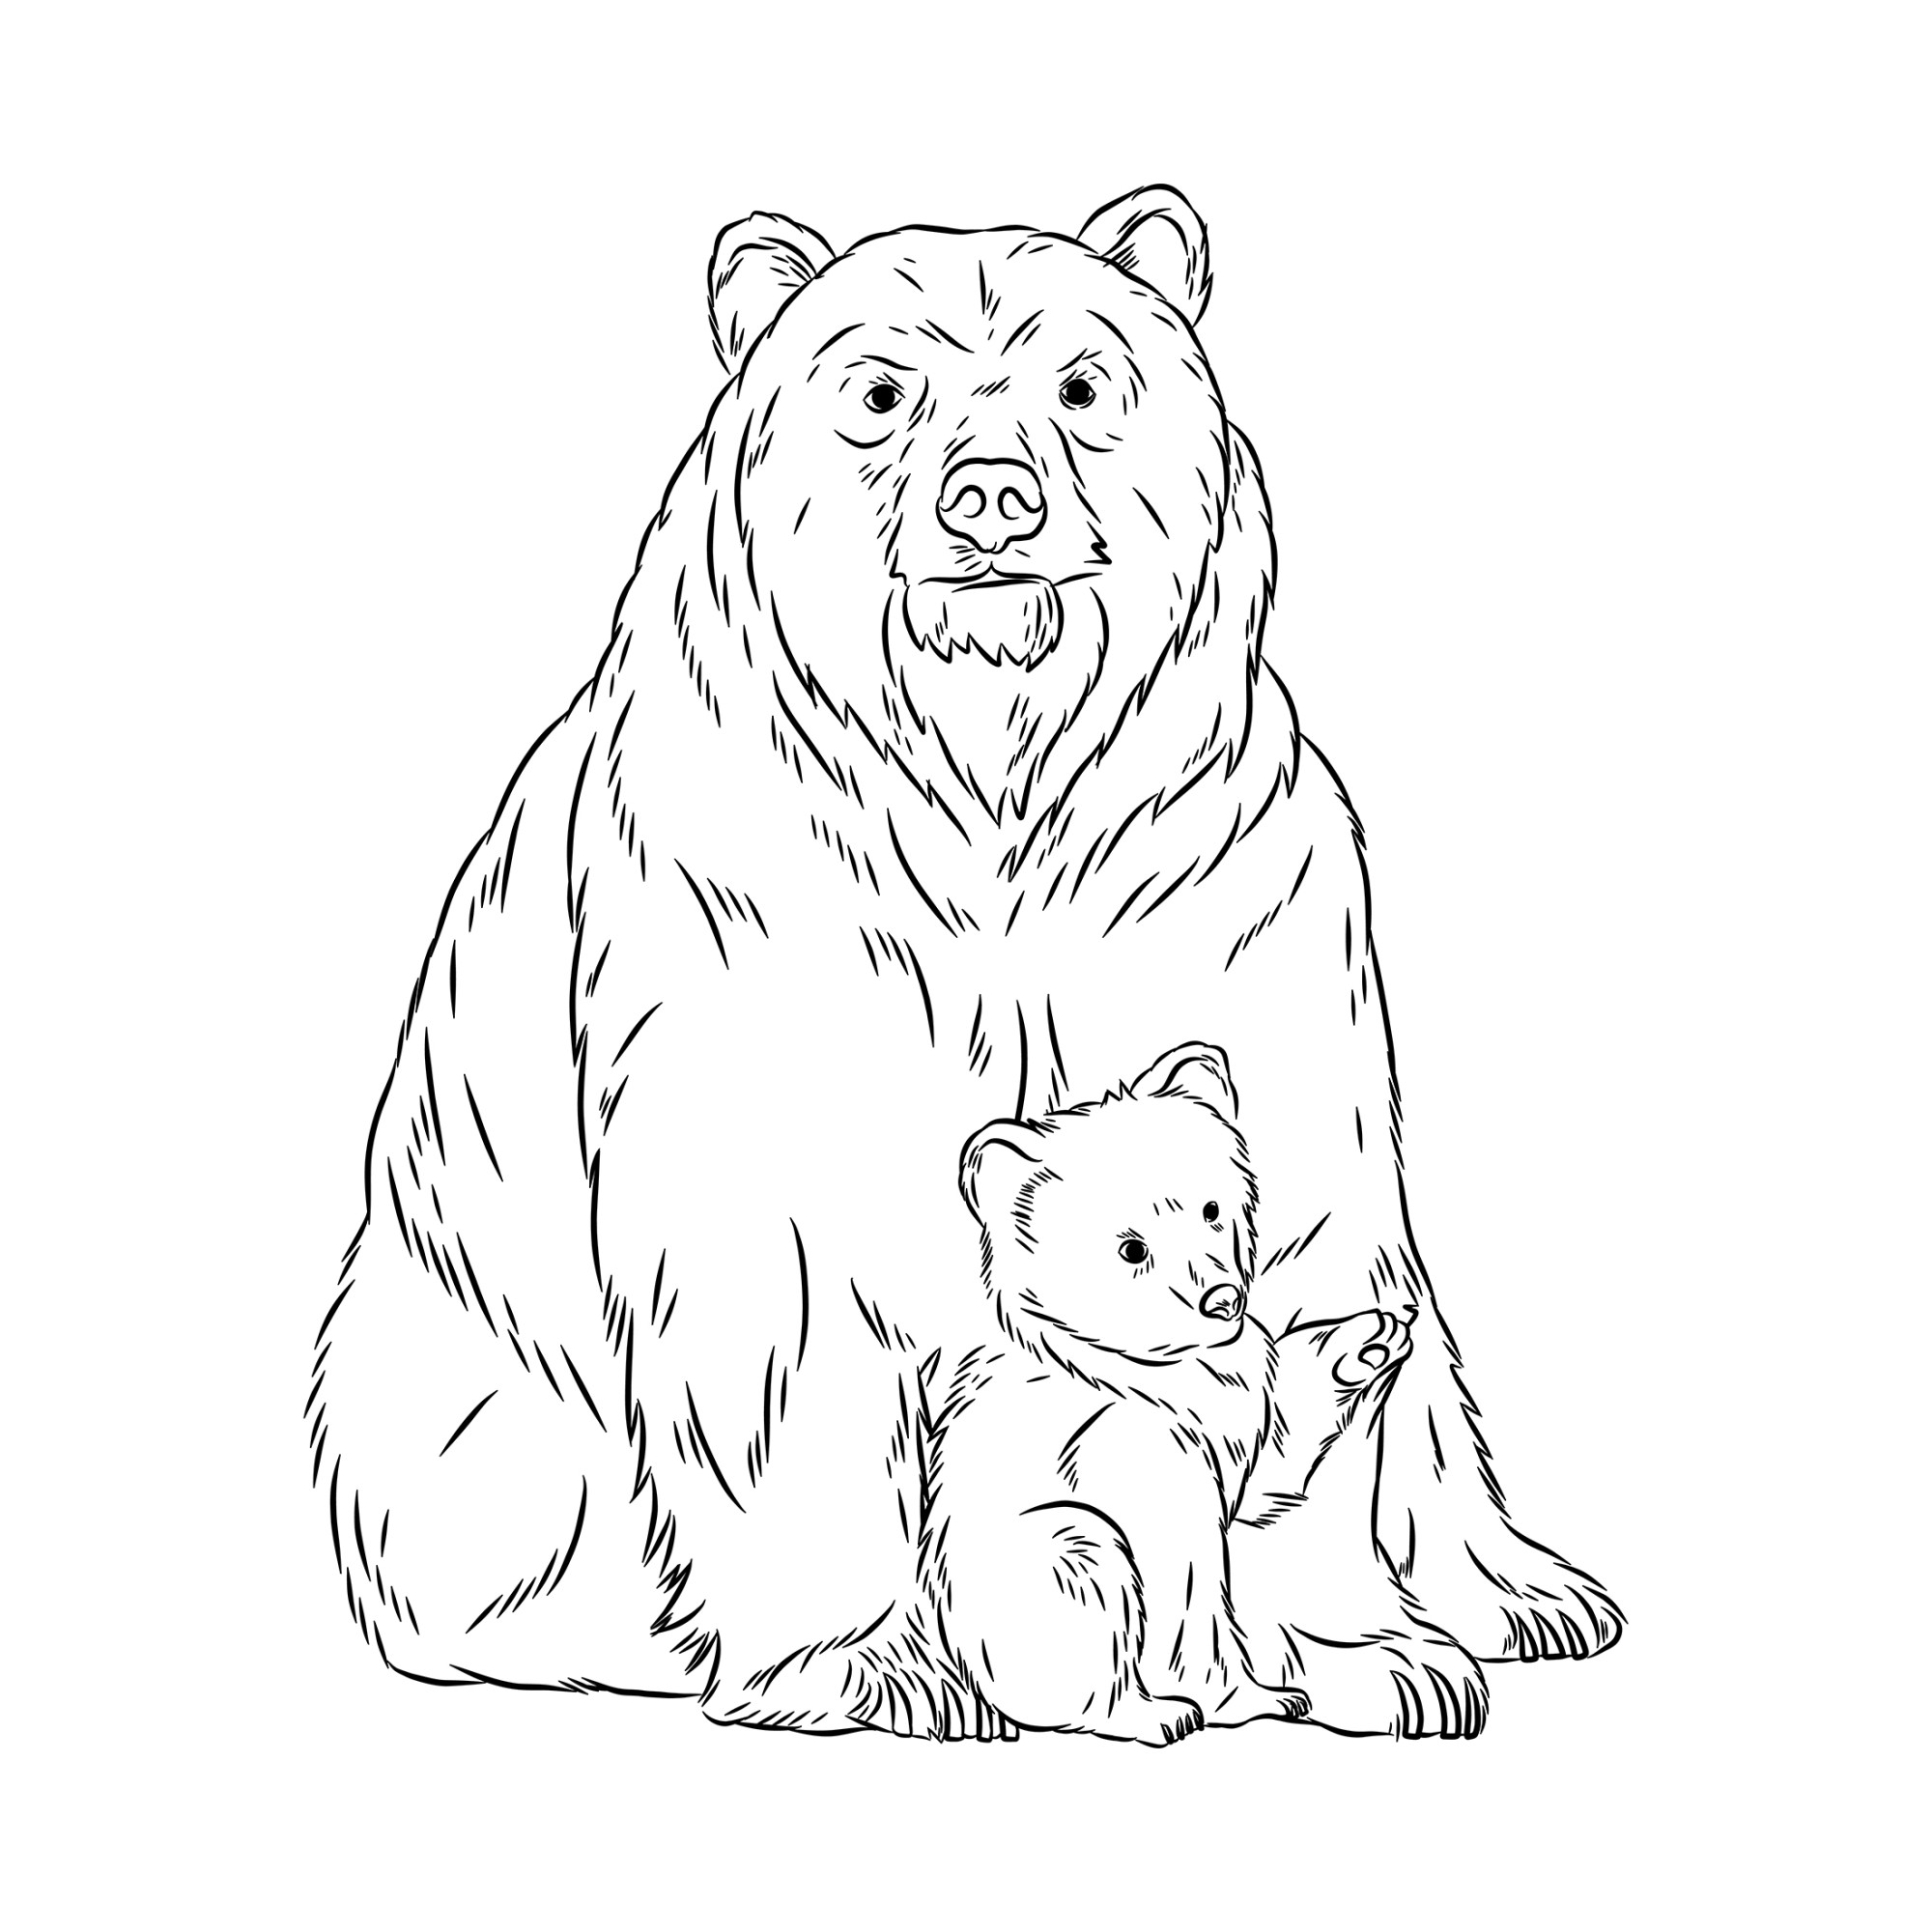 Раскраска для детей: реалистичный медведь сидит с медвежонком